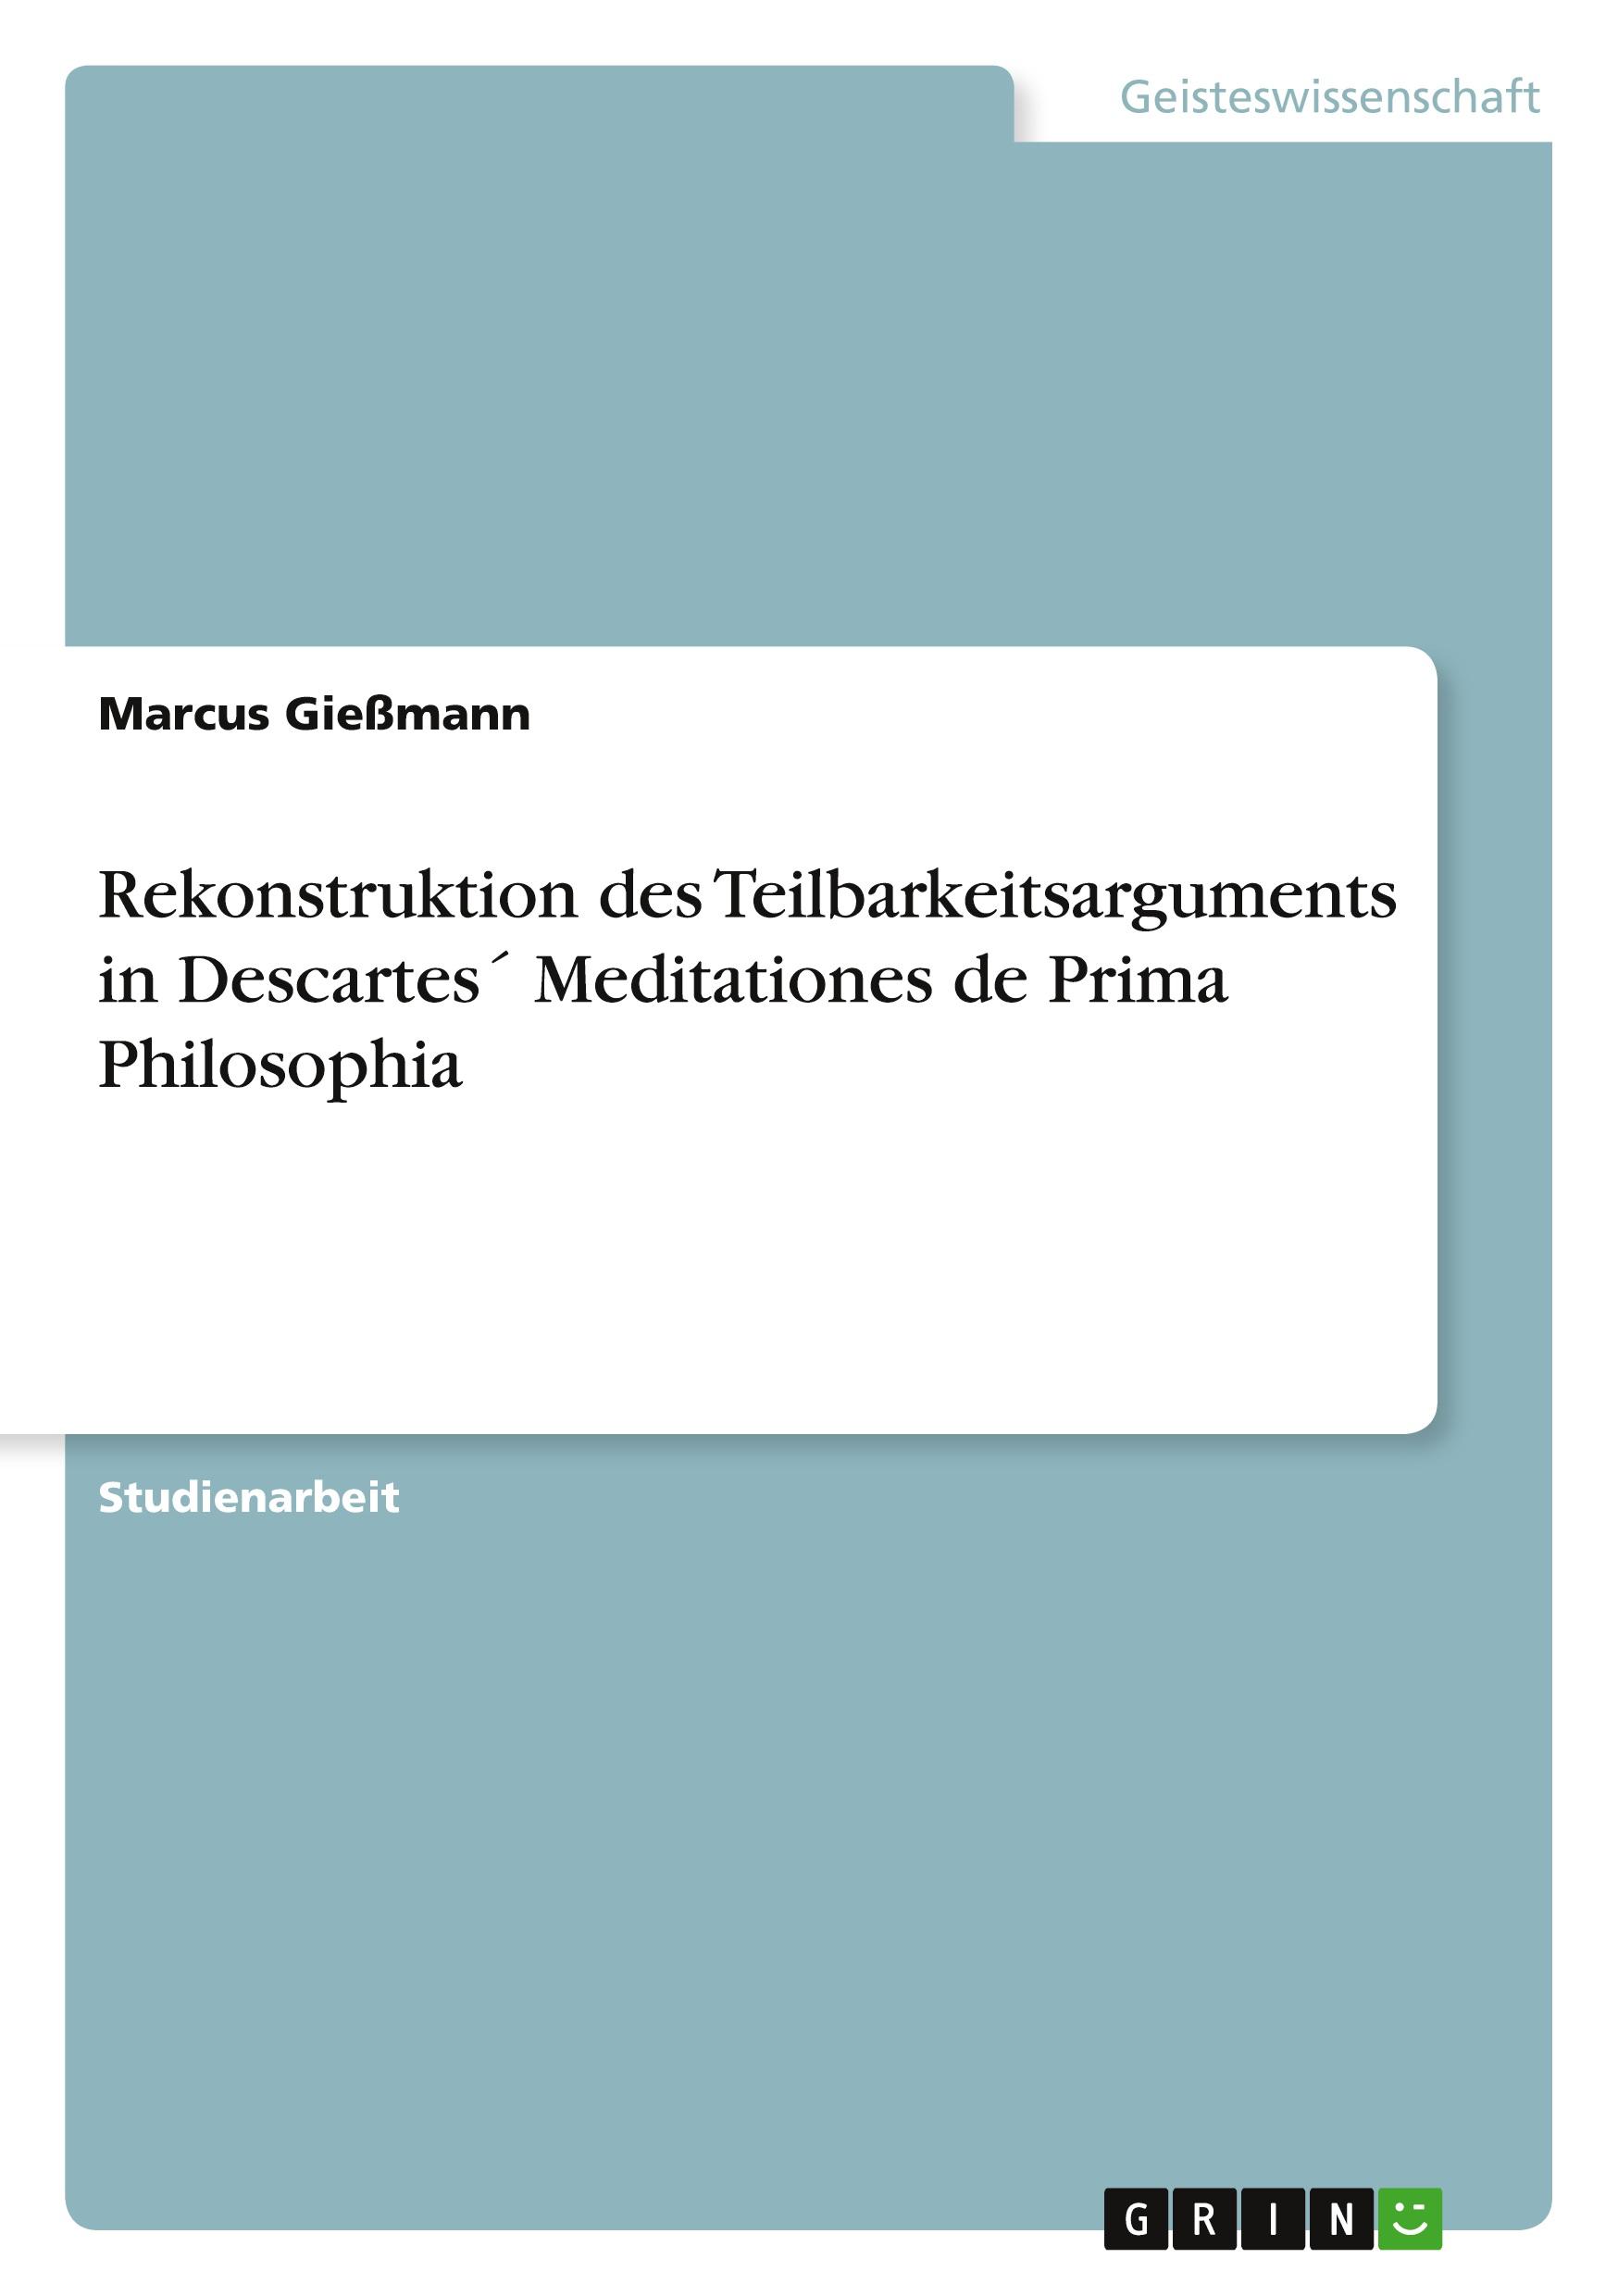 Rekonstruktion des Teilbarkeitsarguments in Descartes´ Meditationes de Prima Philosophia / Marcus Gießmann / Taschenbuch / Paperback / 24 S. / Deutsch / 2010 / GRIN Verlag / EAN 9783640763382 - Gießmann, Marcus